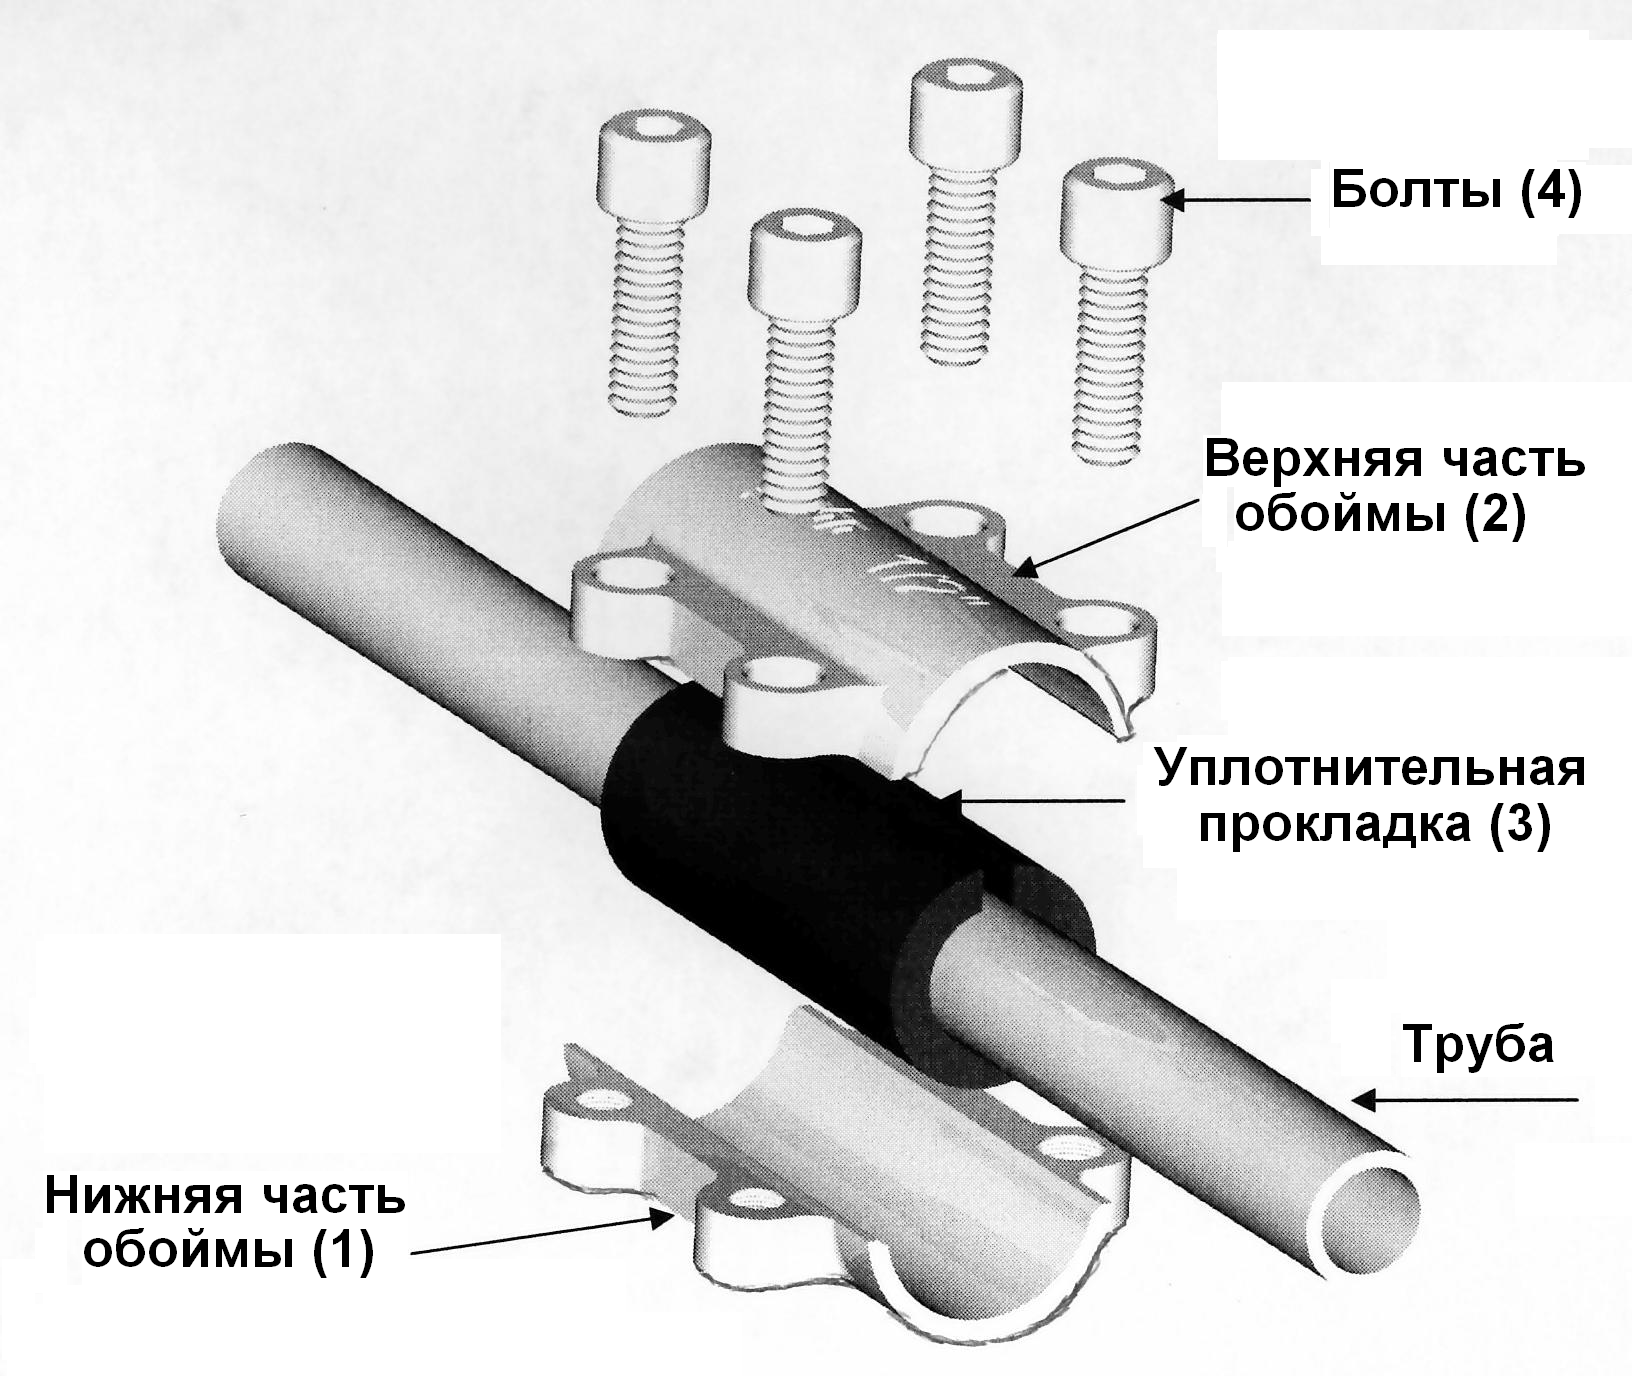 Труба соединения болтами. Обойма ремонтная Gebo DSK 1/2". Соединение металлических труб без сварки и резьбы. Ремонтная муфта для полипропиленовых труб 1/2. Схема соединения стальных труб на резьбе.